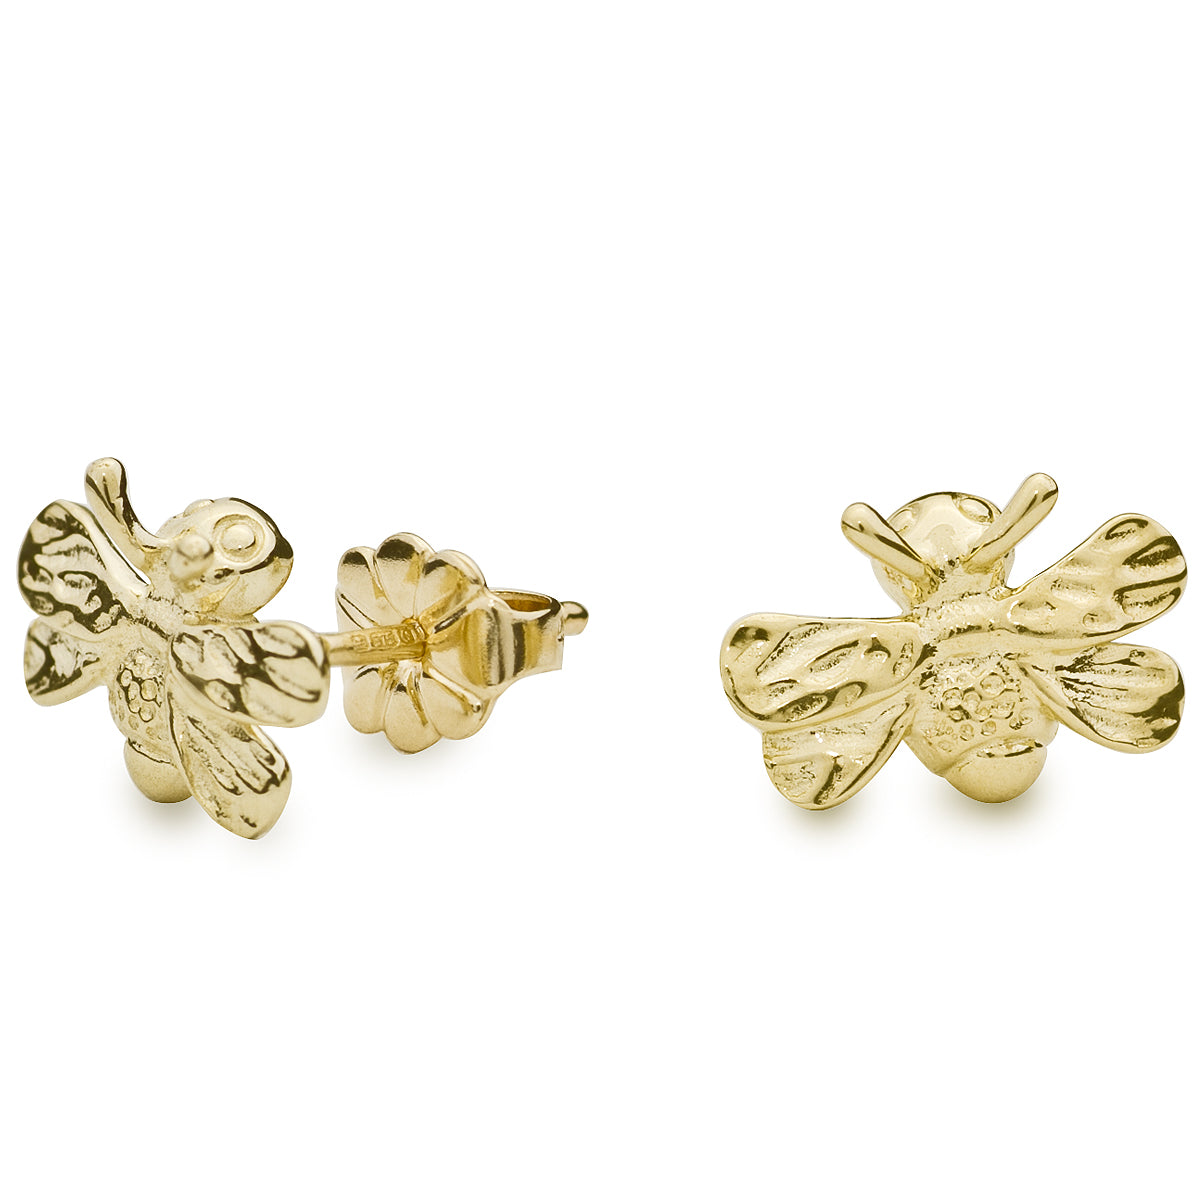 Bumble Bee Solid Gold Stud Earrings - Scarlett Jewellery